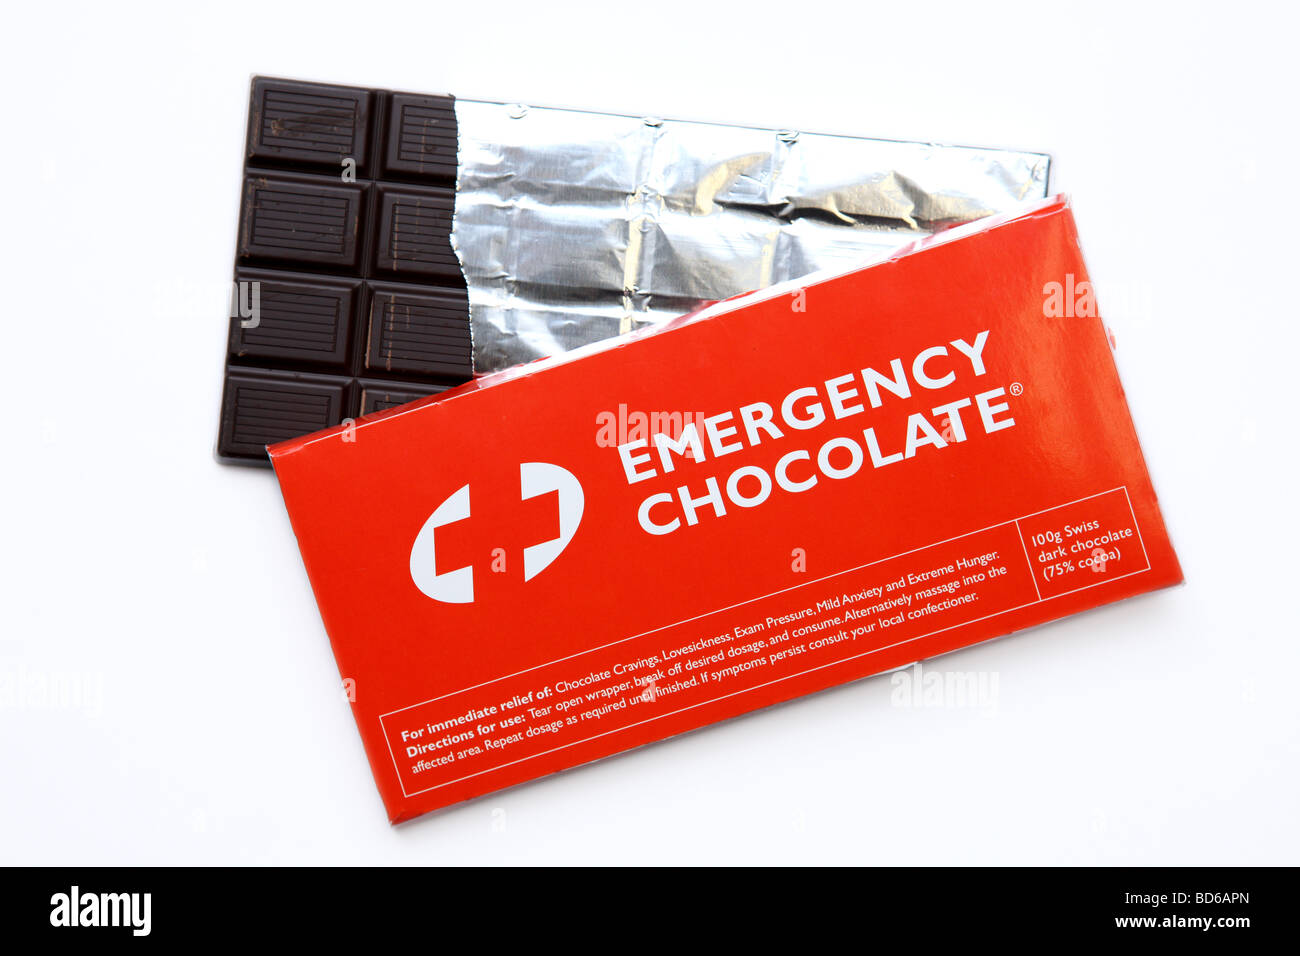 Diätetische schokolade Ausgeschnittene Stockfotos und -bilder - Alamy